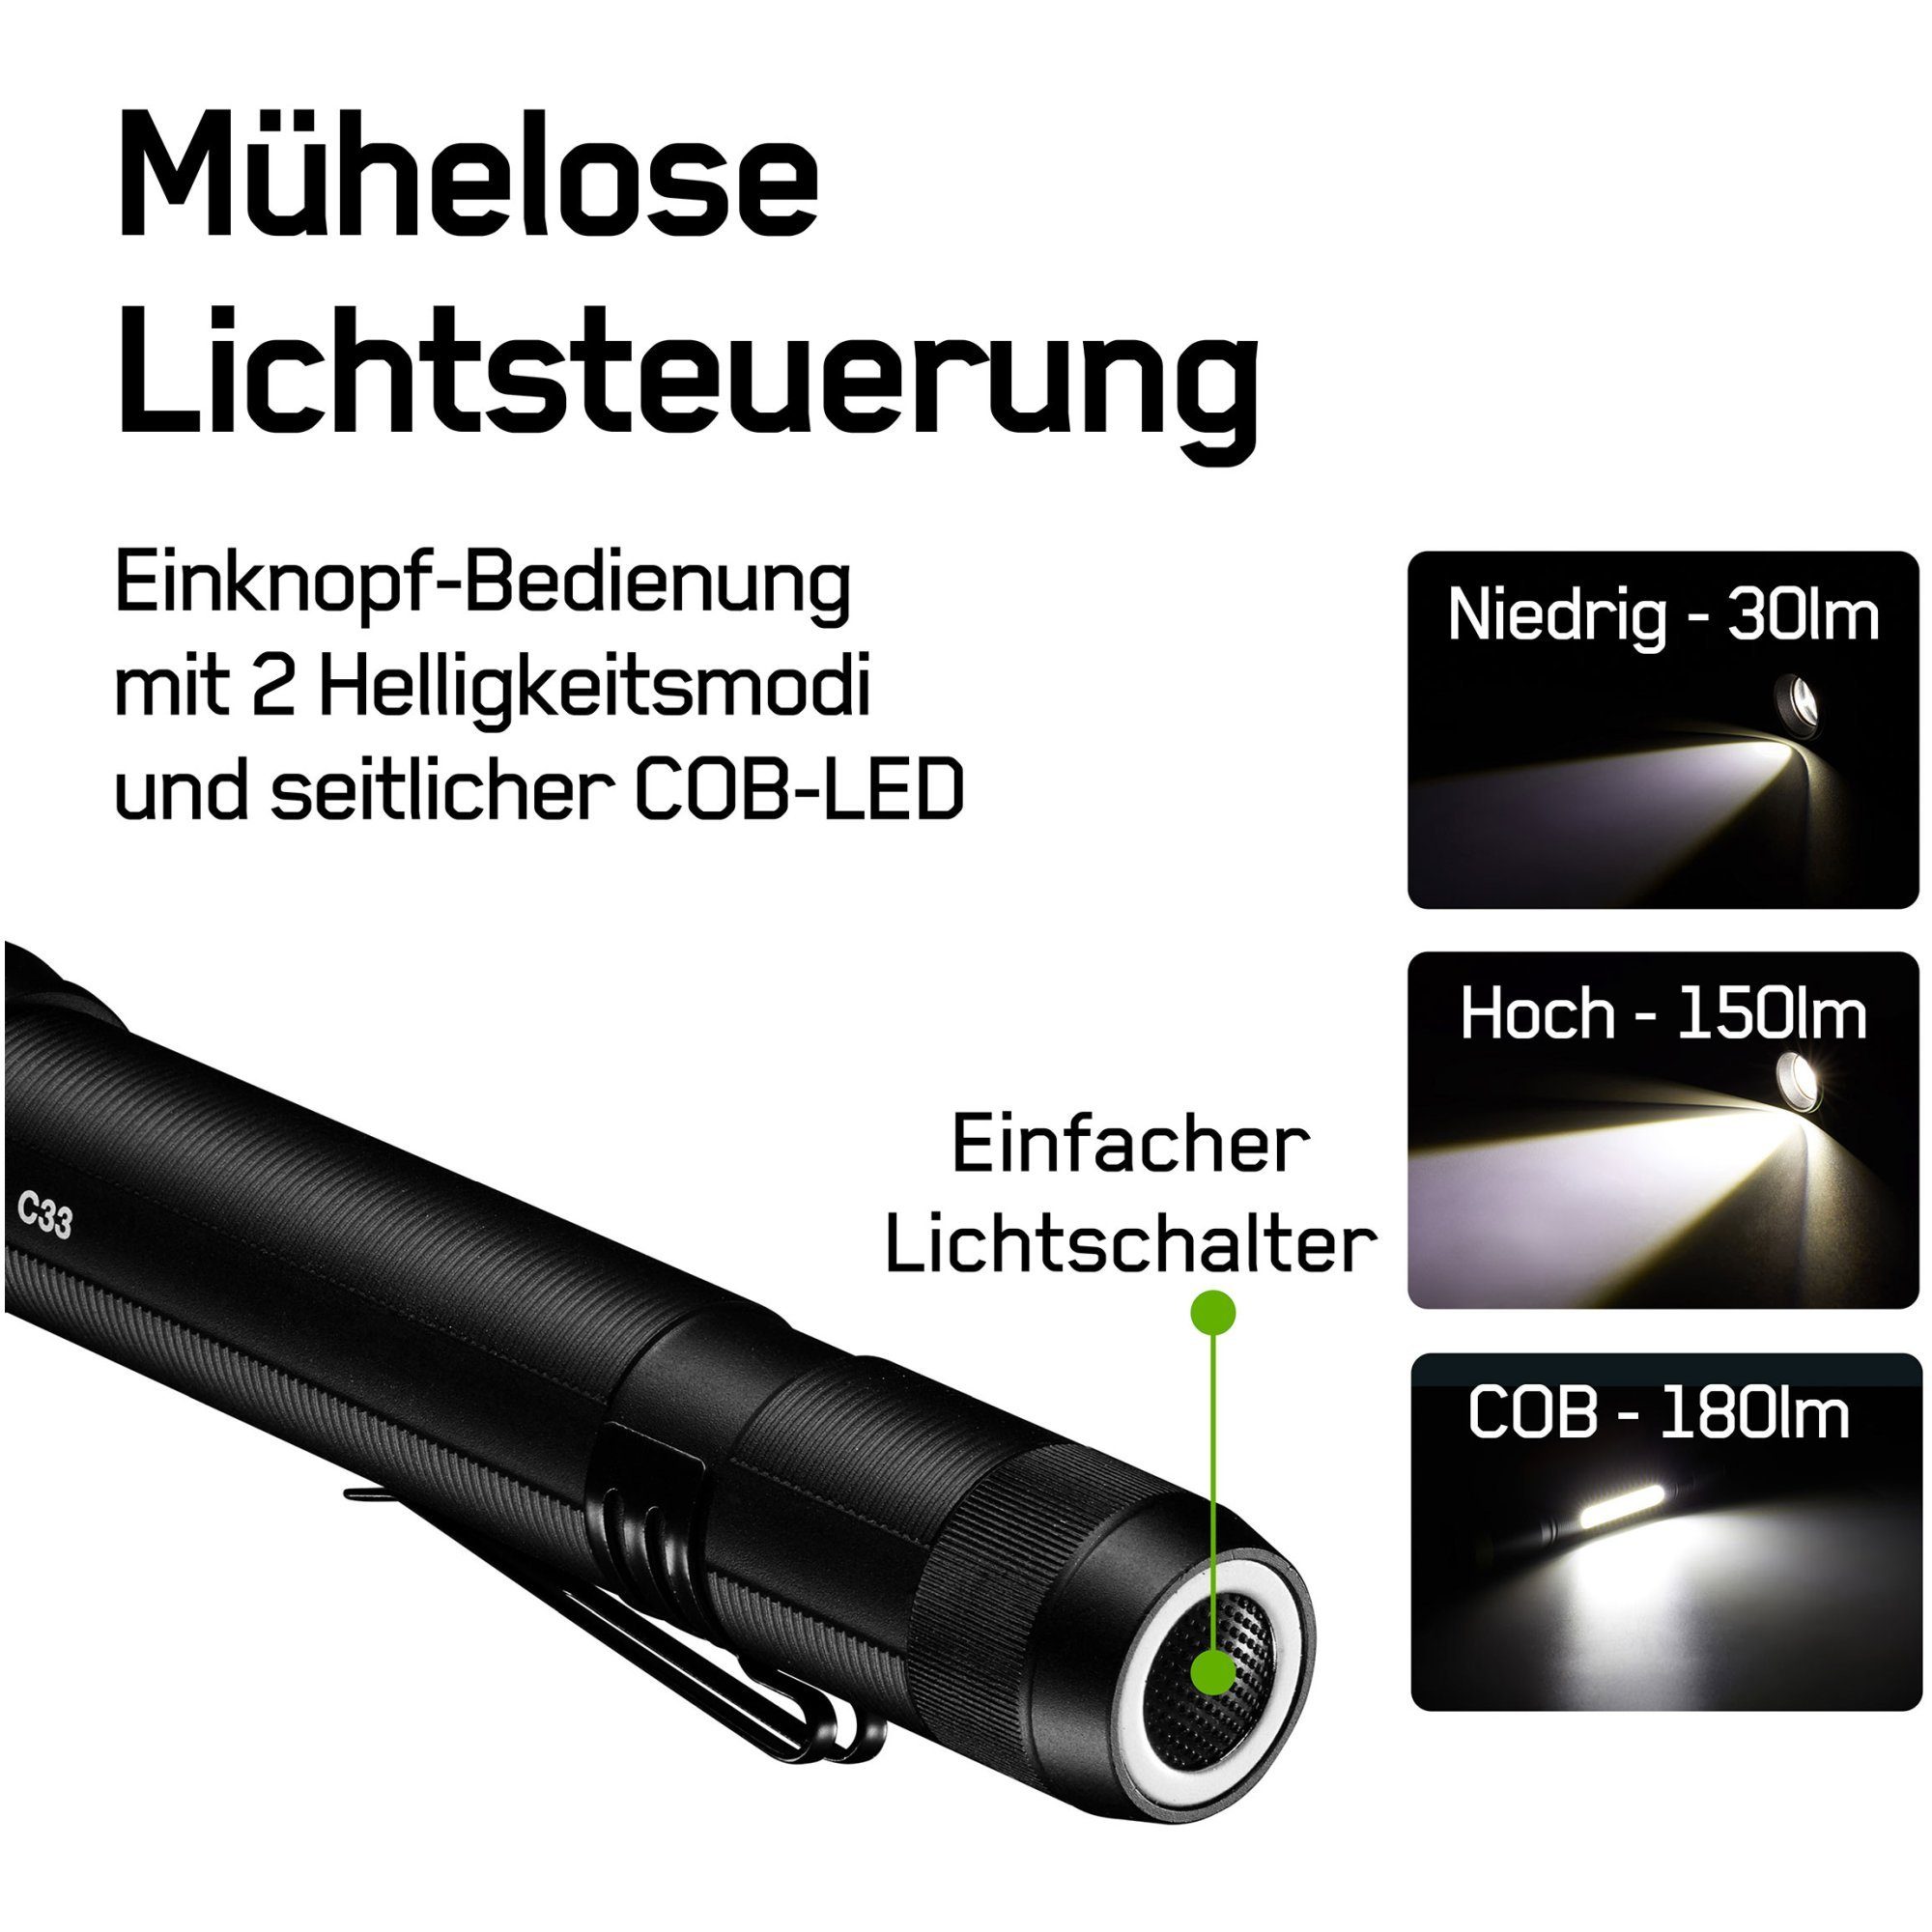 GP Mignon LED Lumen 150 Batteries C33 inklusive Taschenlampe Batterien 1,5V 2x AA GP Taschenlampe